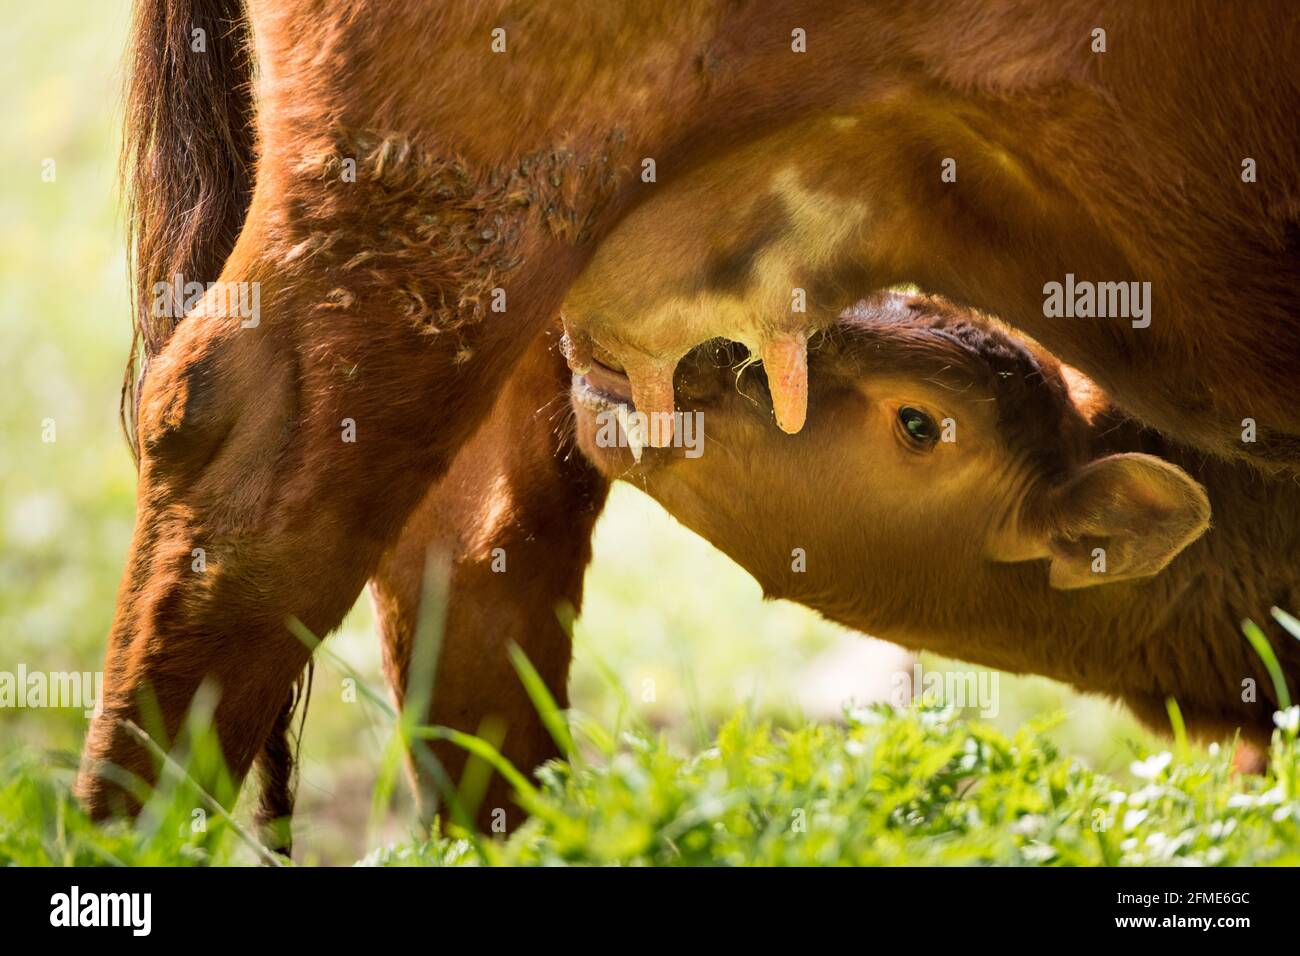 Ein Kalb darf bei seiner Mutter auf der Wiese bleiben und wird von Natur aus mit der Muttermilch angesäut. Natur pur am besten für den Tierschutz Stockfoto